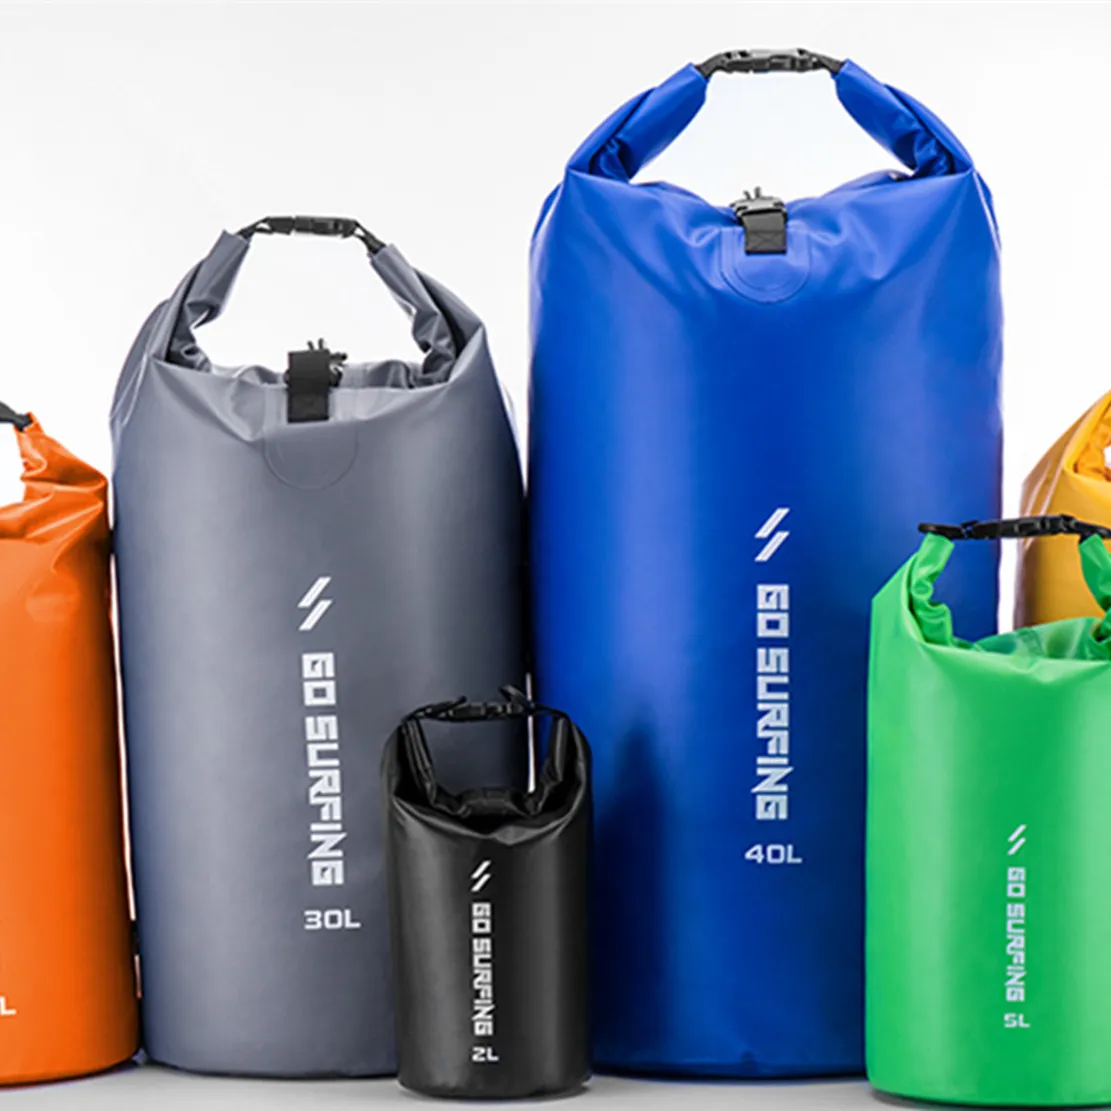 ASRQGOAL PVC branda su geçirmez açık spor sırt çantası yüzer kuru çanta spor kamp yüzme plaj dalış-6 boyutları sürme